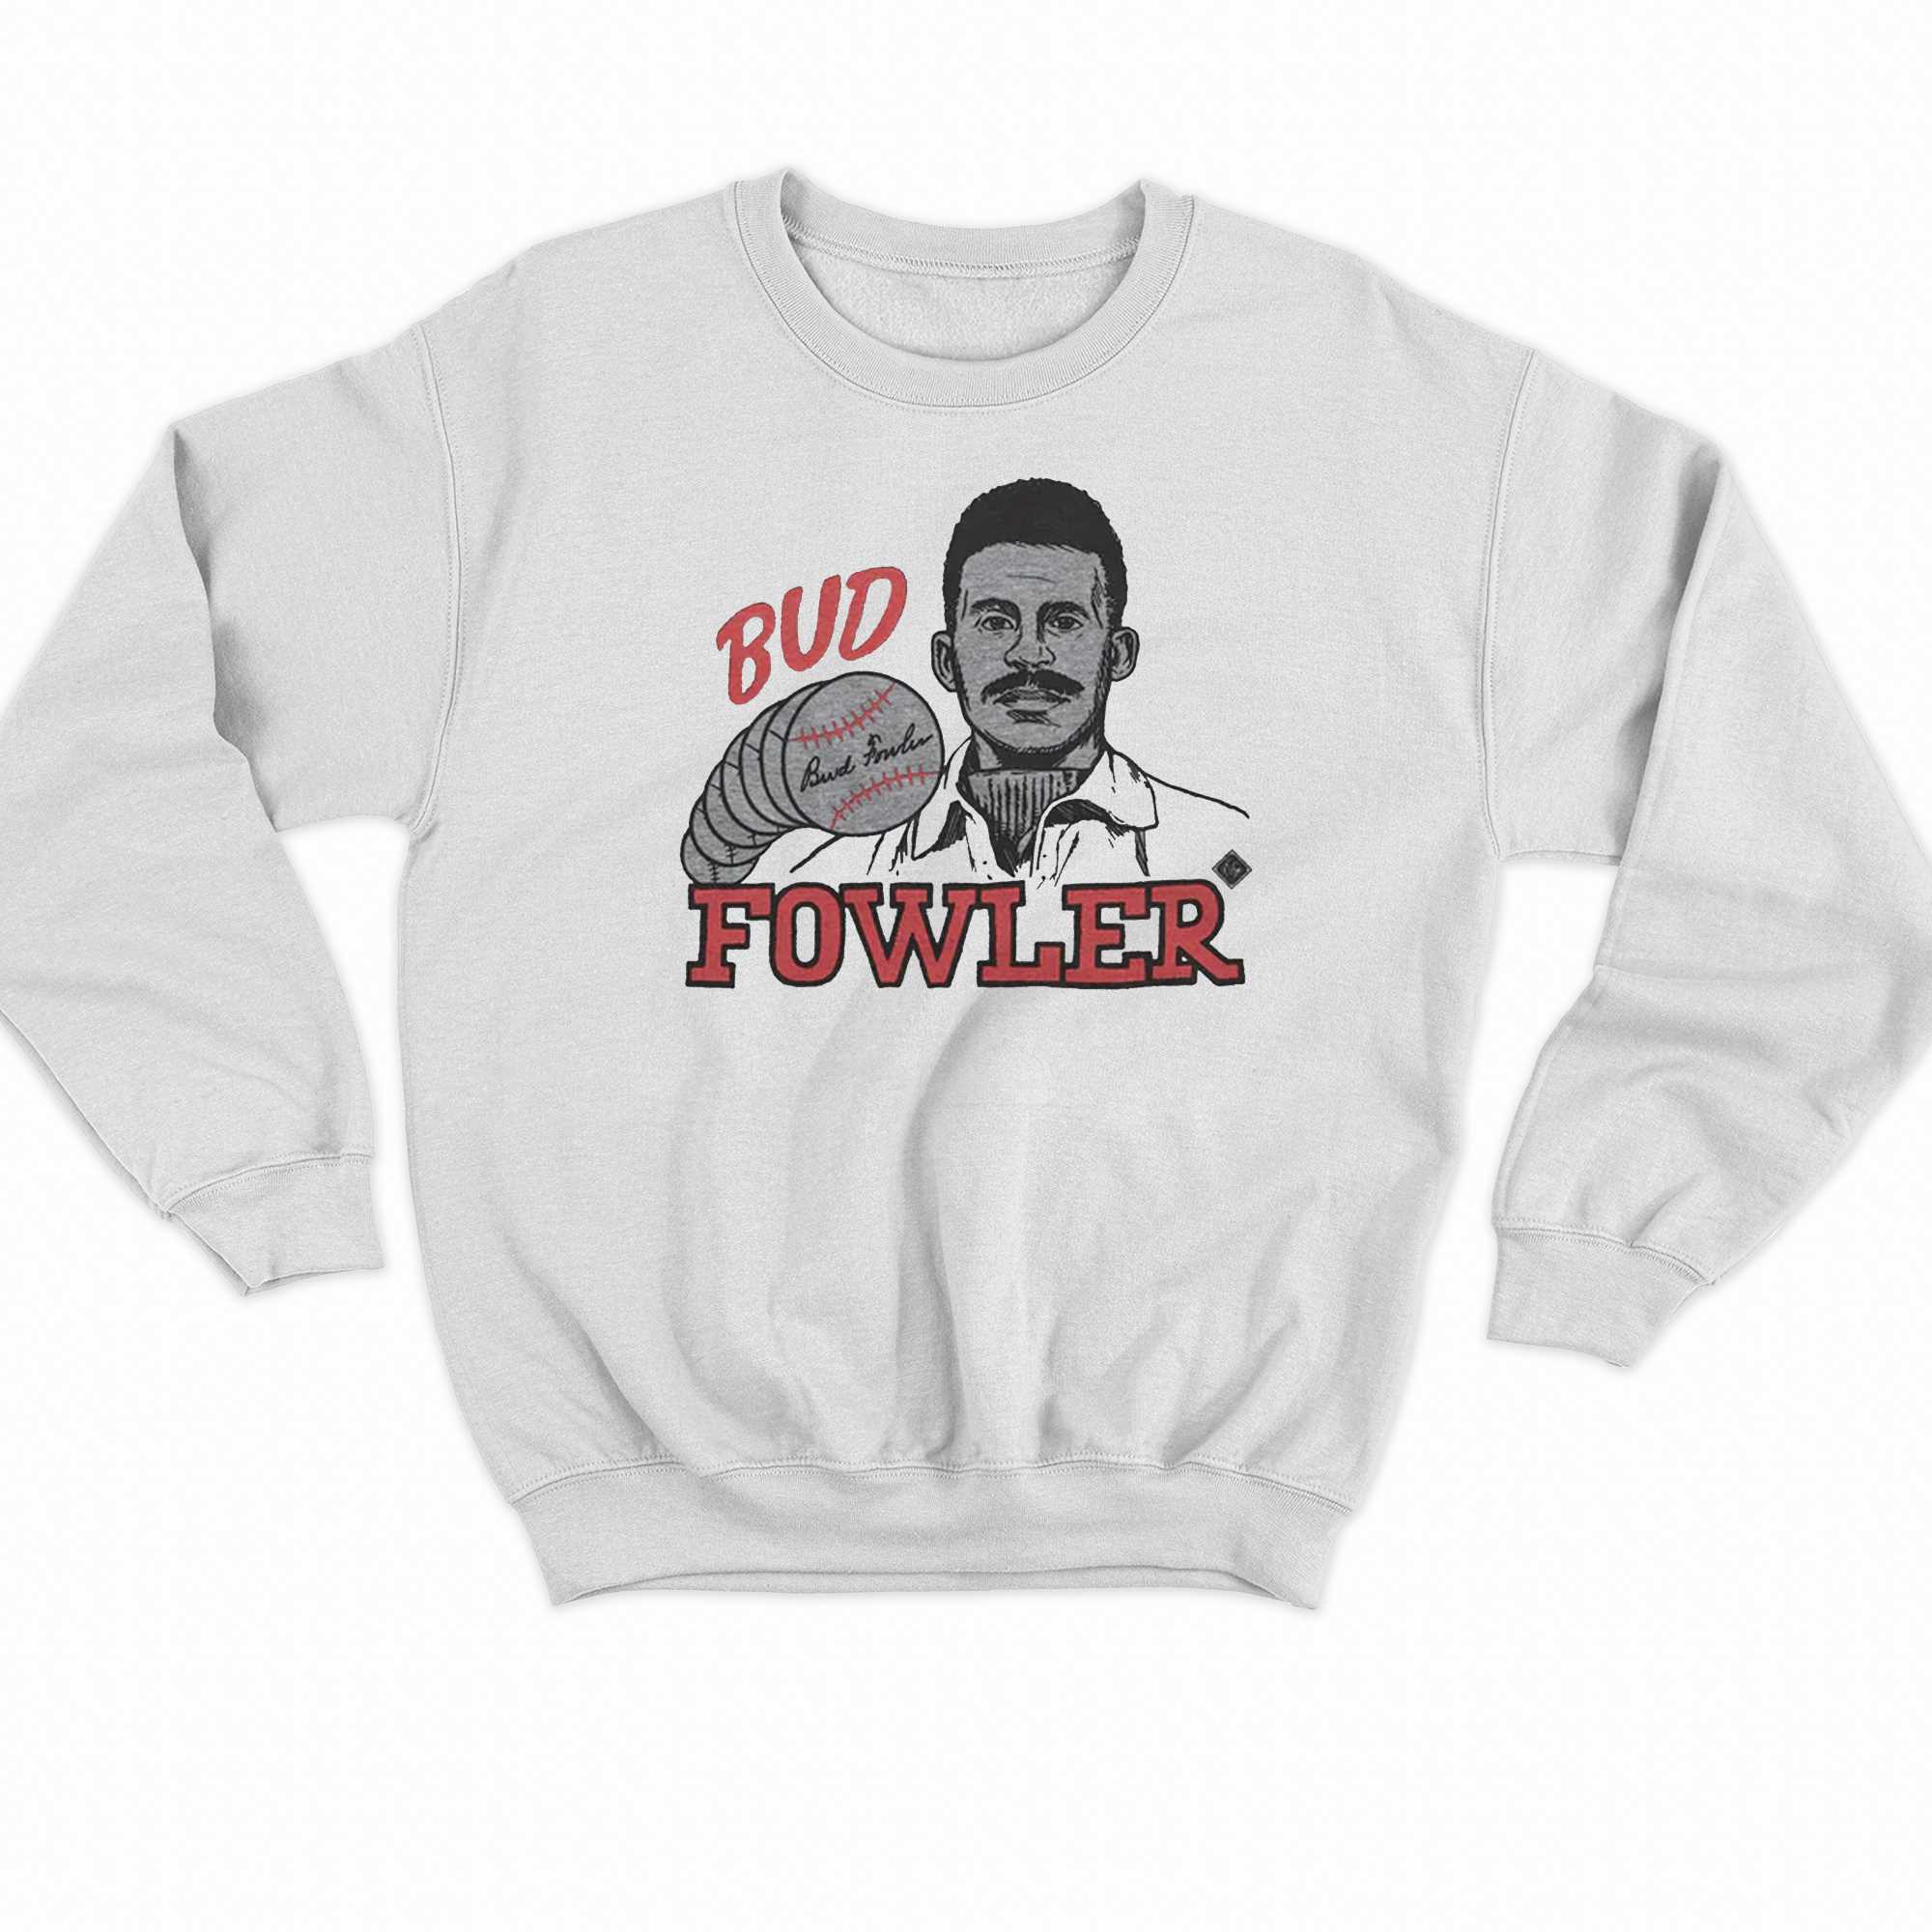 Bud Fowler T-shirt 